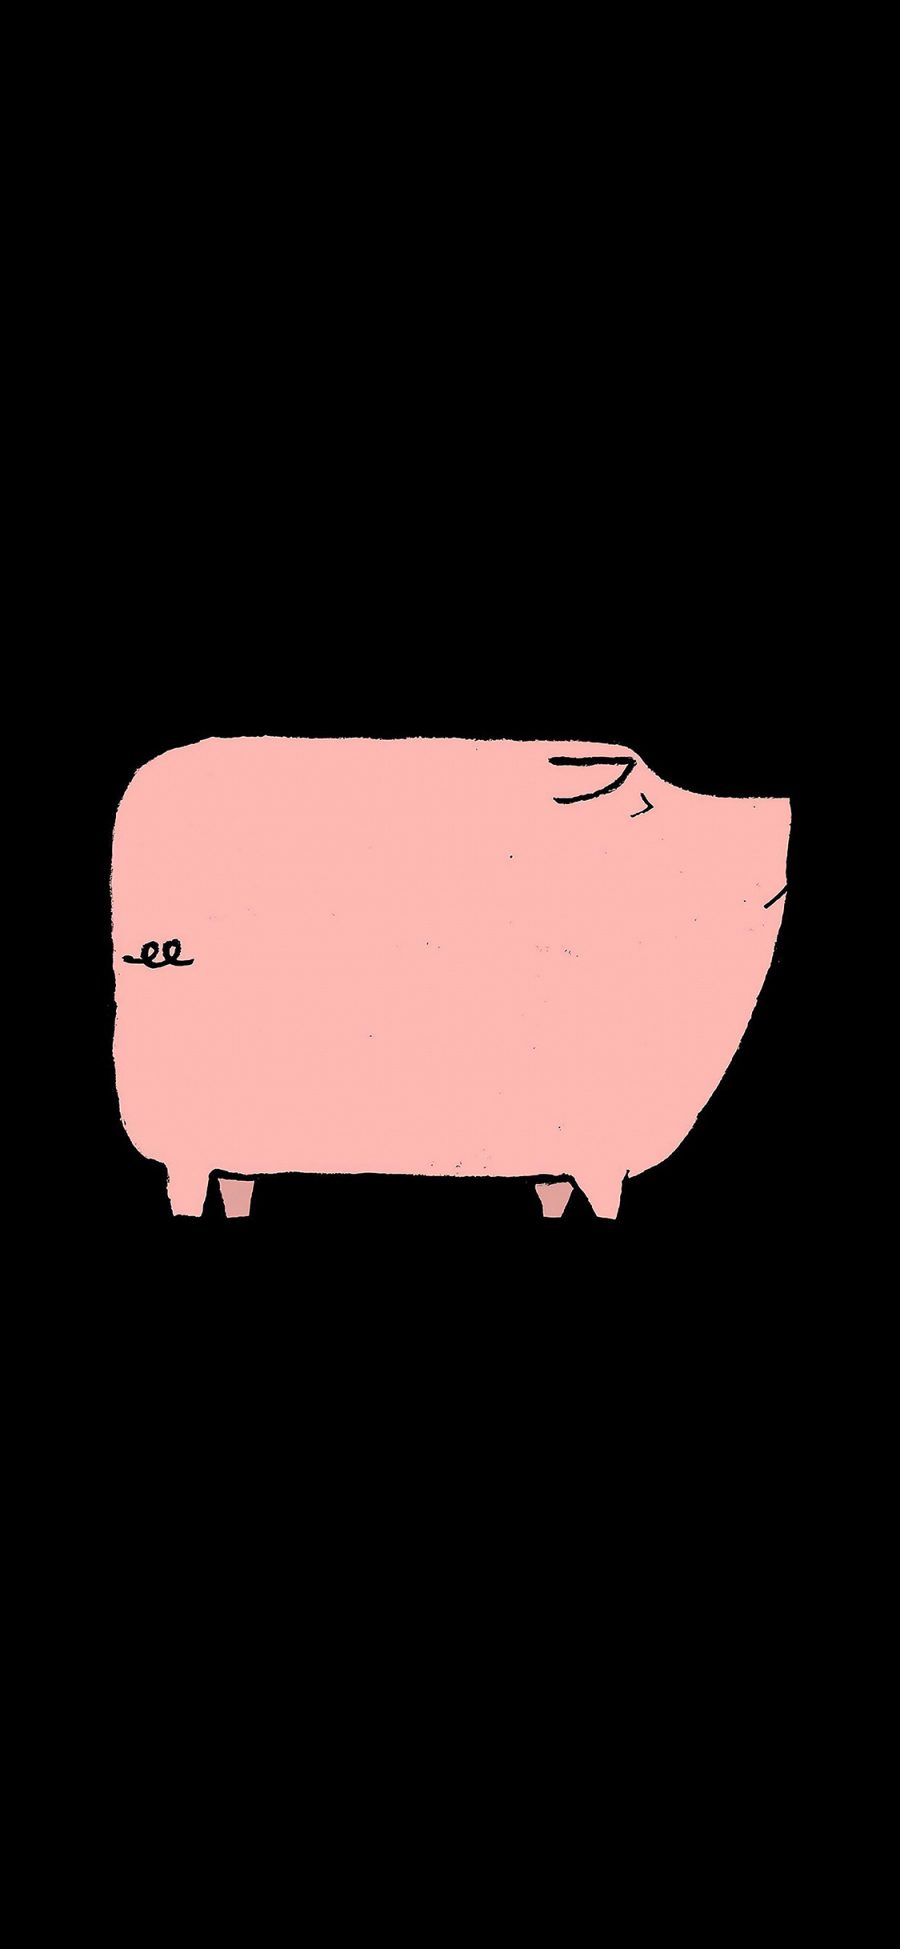 [2436×1125]猪 粉 趣味 黑 苹果手机动漫壁纸图片